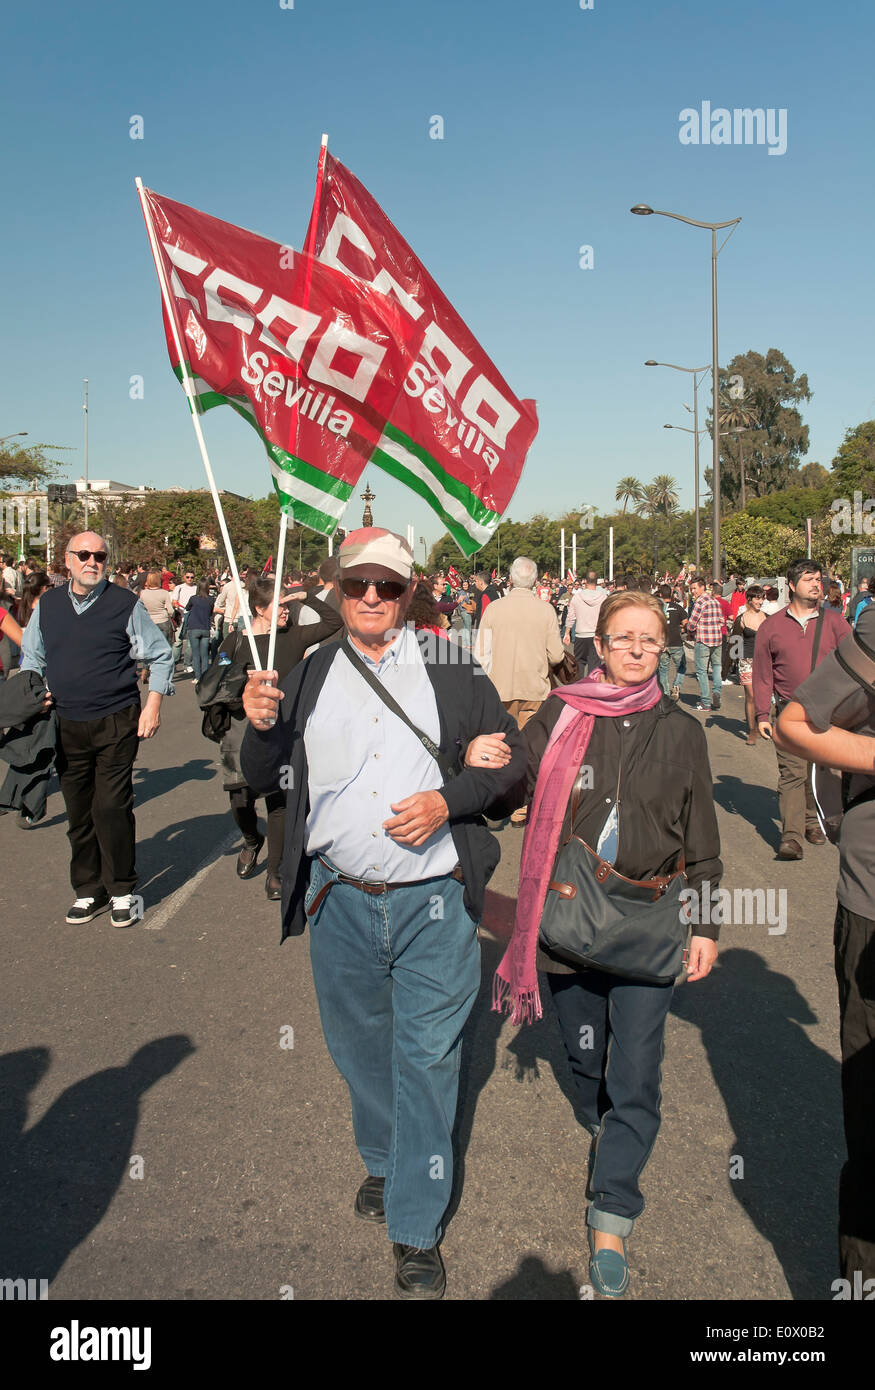 General strike, Demonstration, November 14, 2012, Seville, Spain, Europe Stock Photo